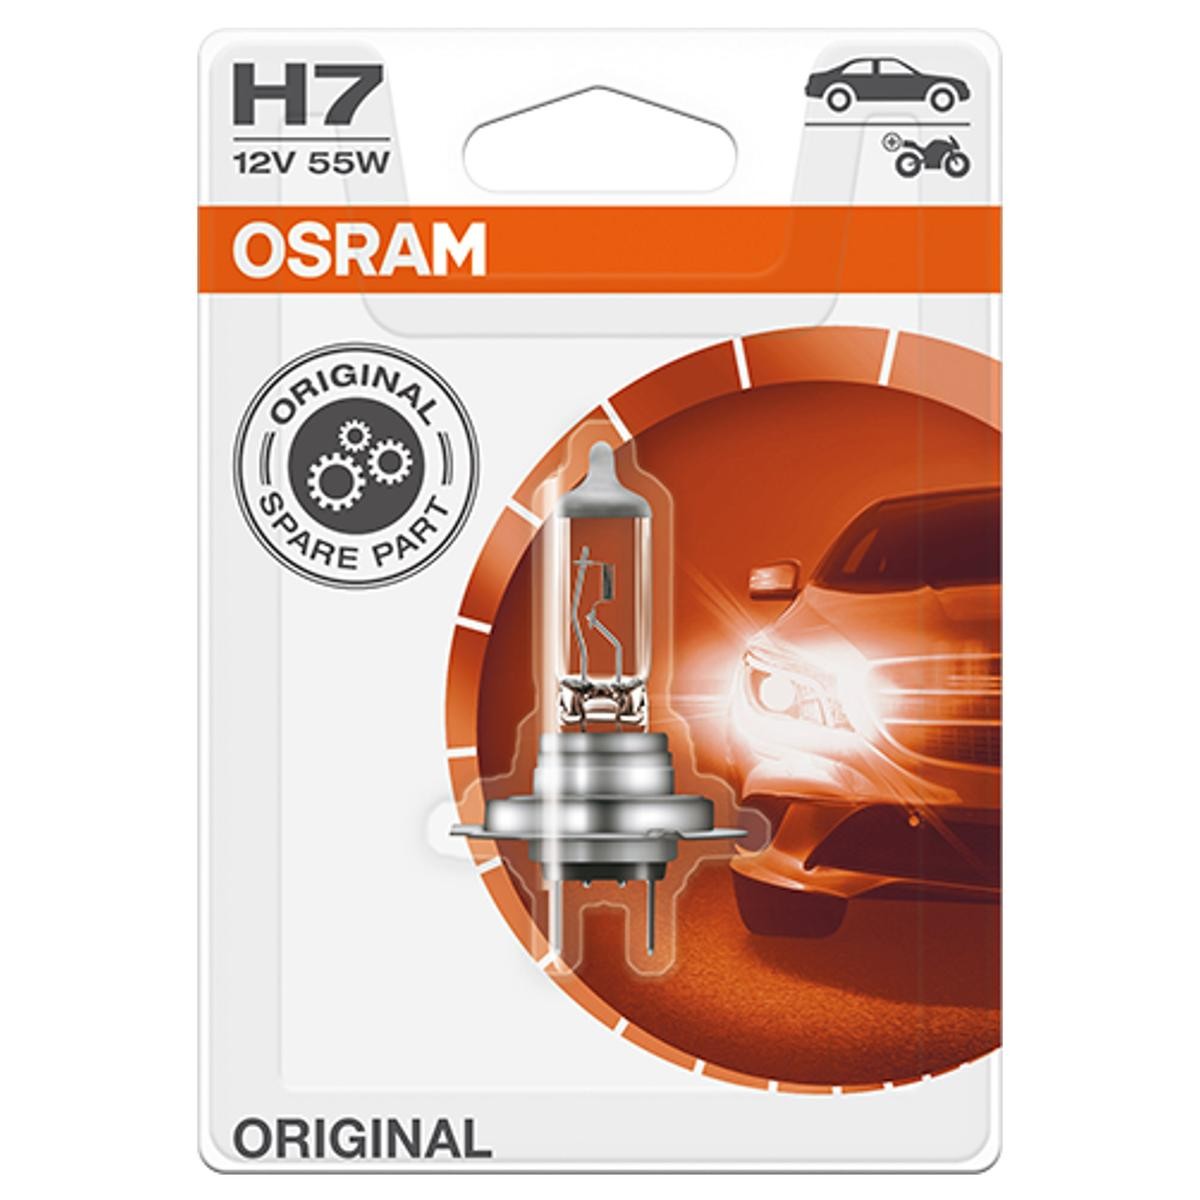 OSRAM 64210-01B LADA Lampe für Fernlicht H7 12V 55W3200K Halogen